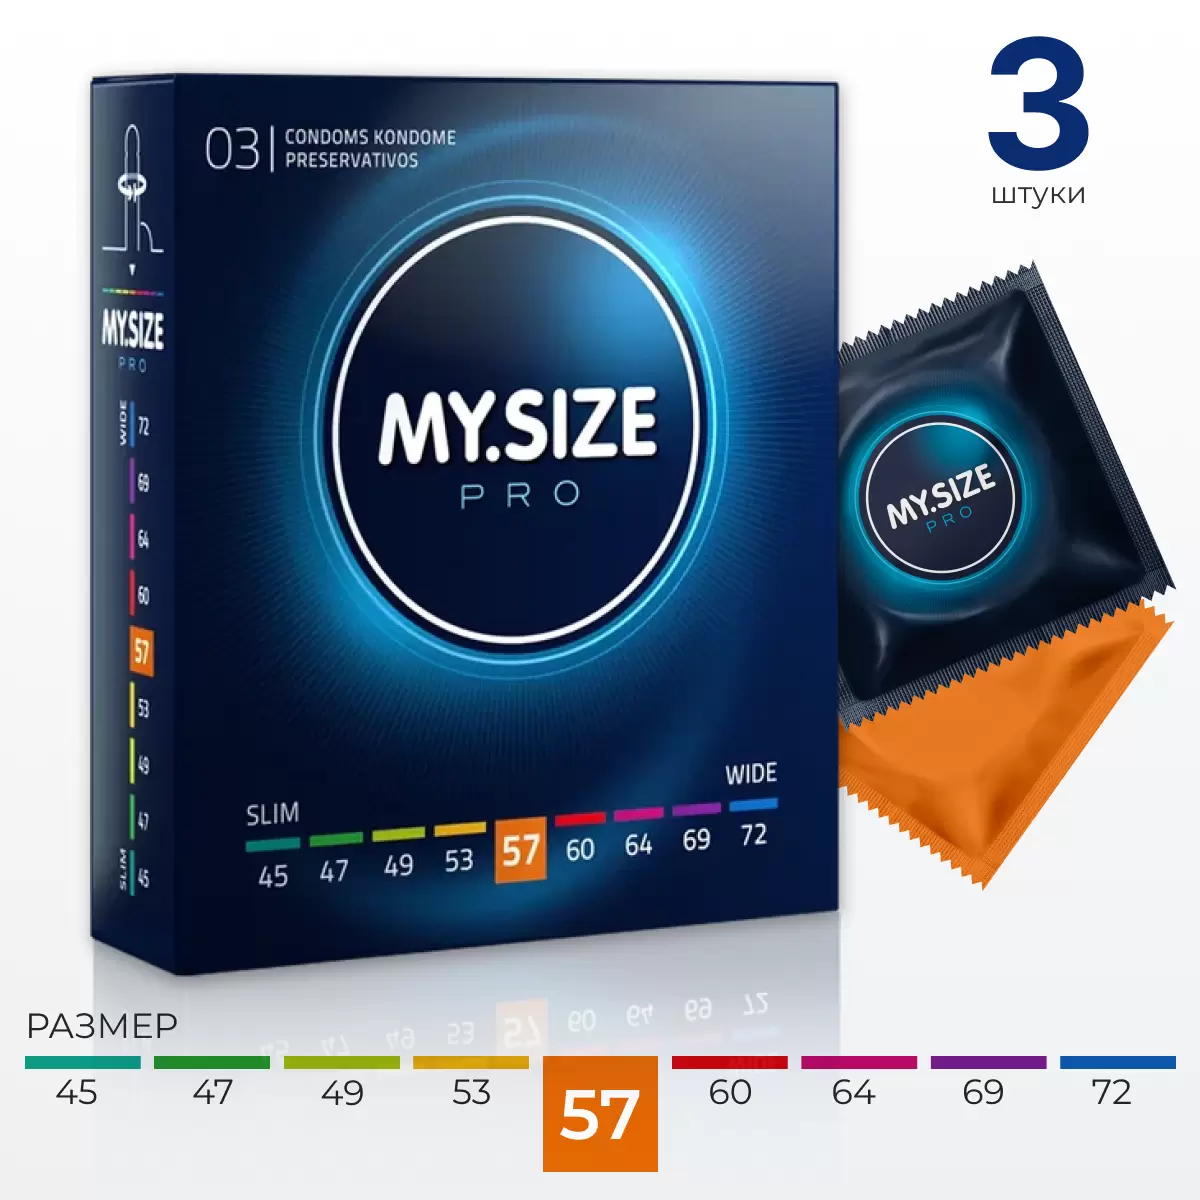 MY.SIZE № 3 презервативы классические ширина 5.7 см. Vestalshop.ru - Изображение 1